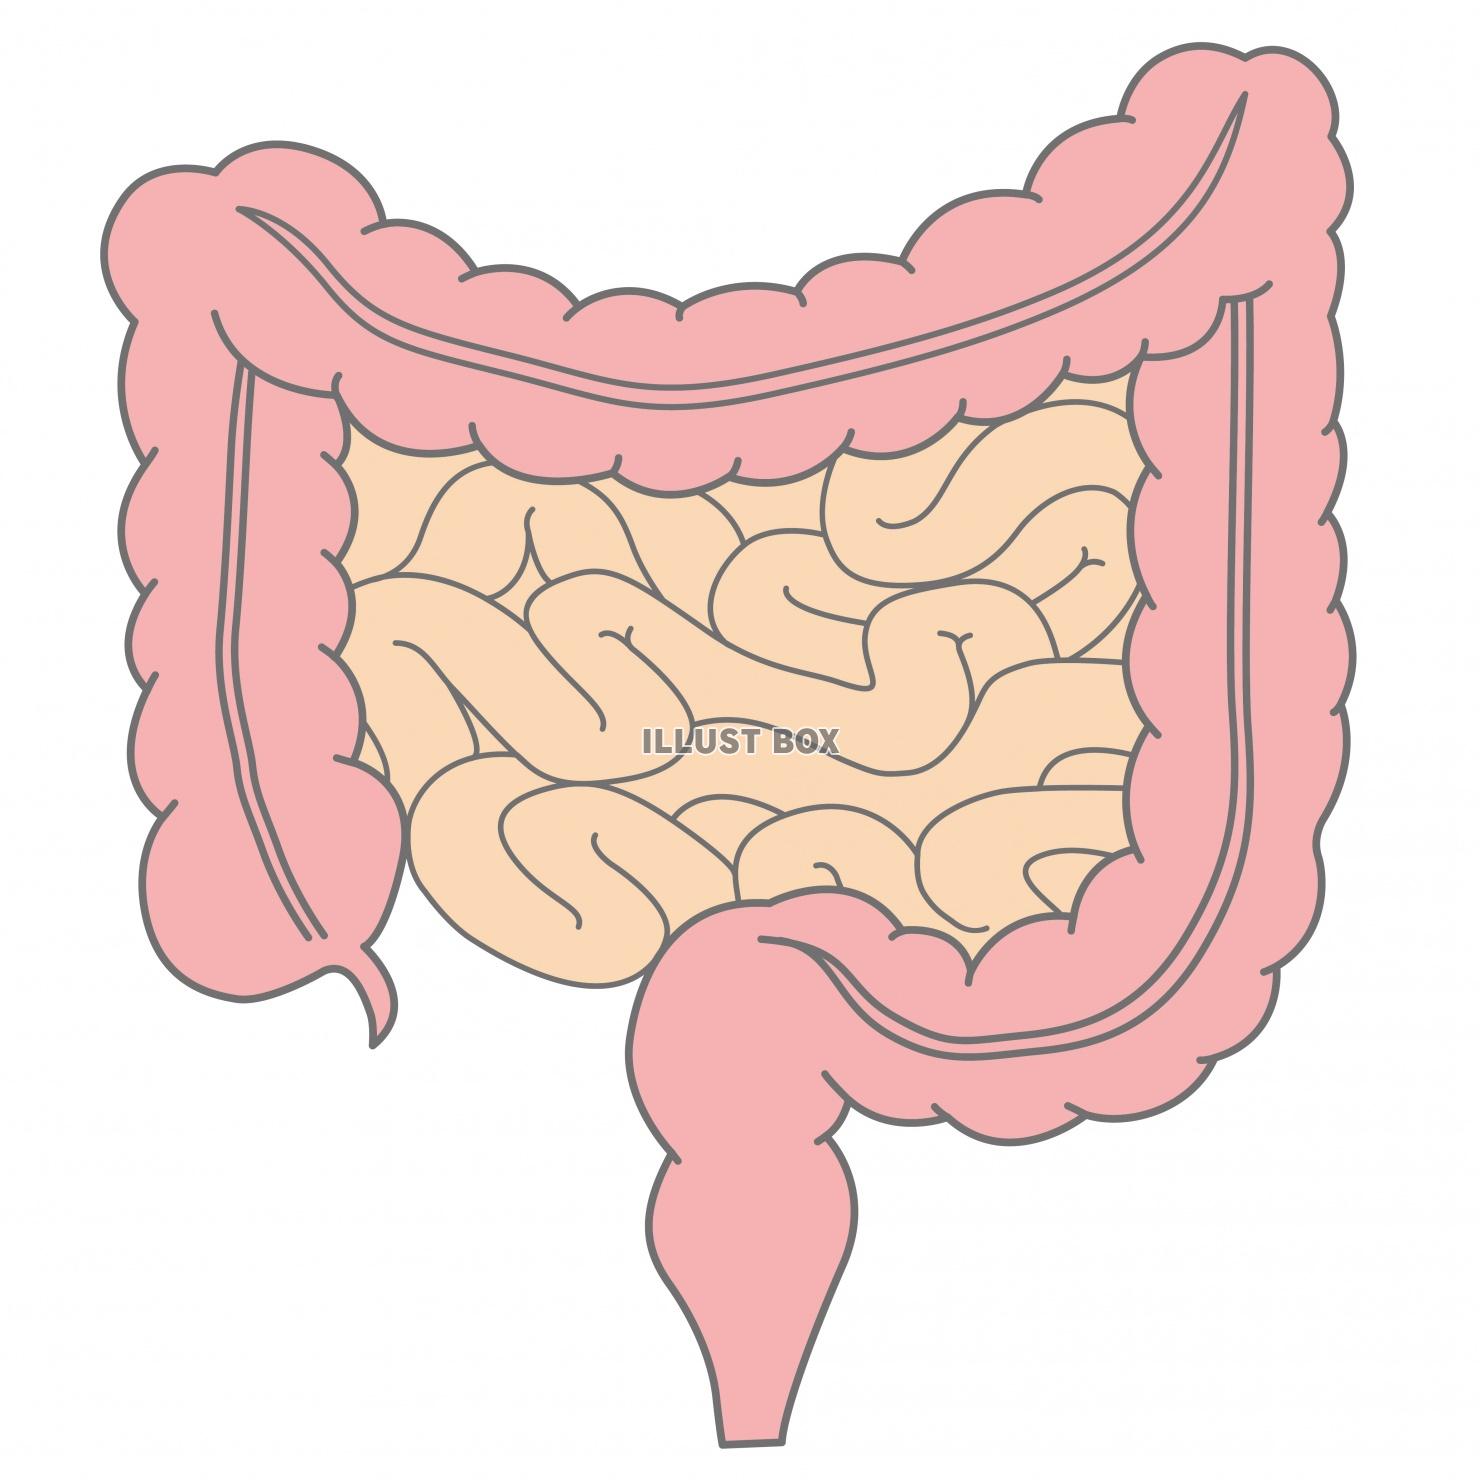 人間の身体★大腸と小腸★消化器官